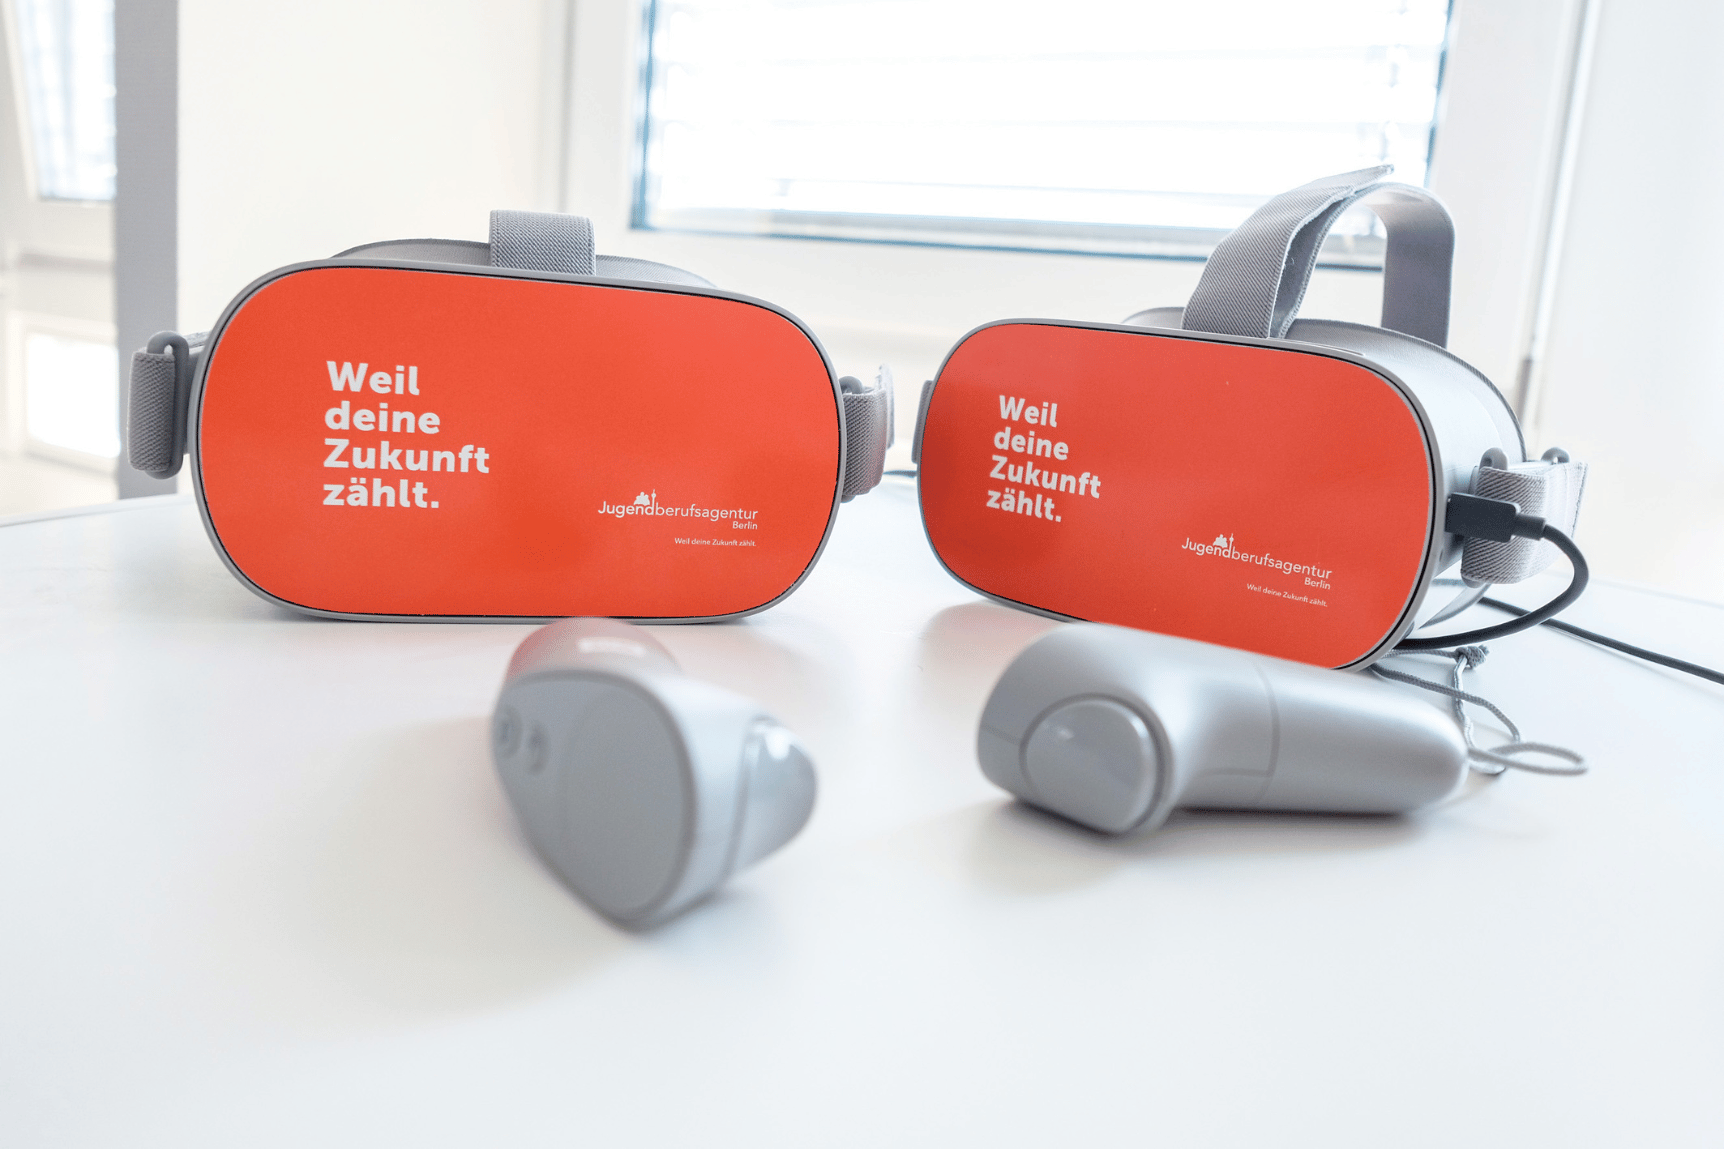 Zwei VR-Brillen und die dazugehörigen Controller liegen auf einem Tisch